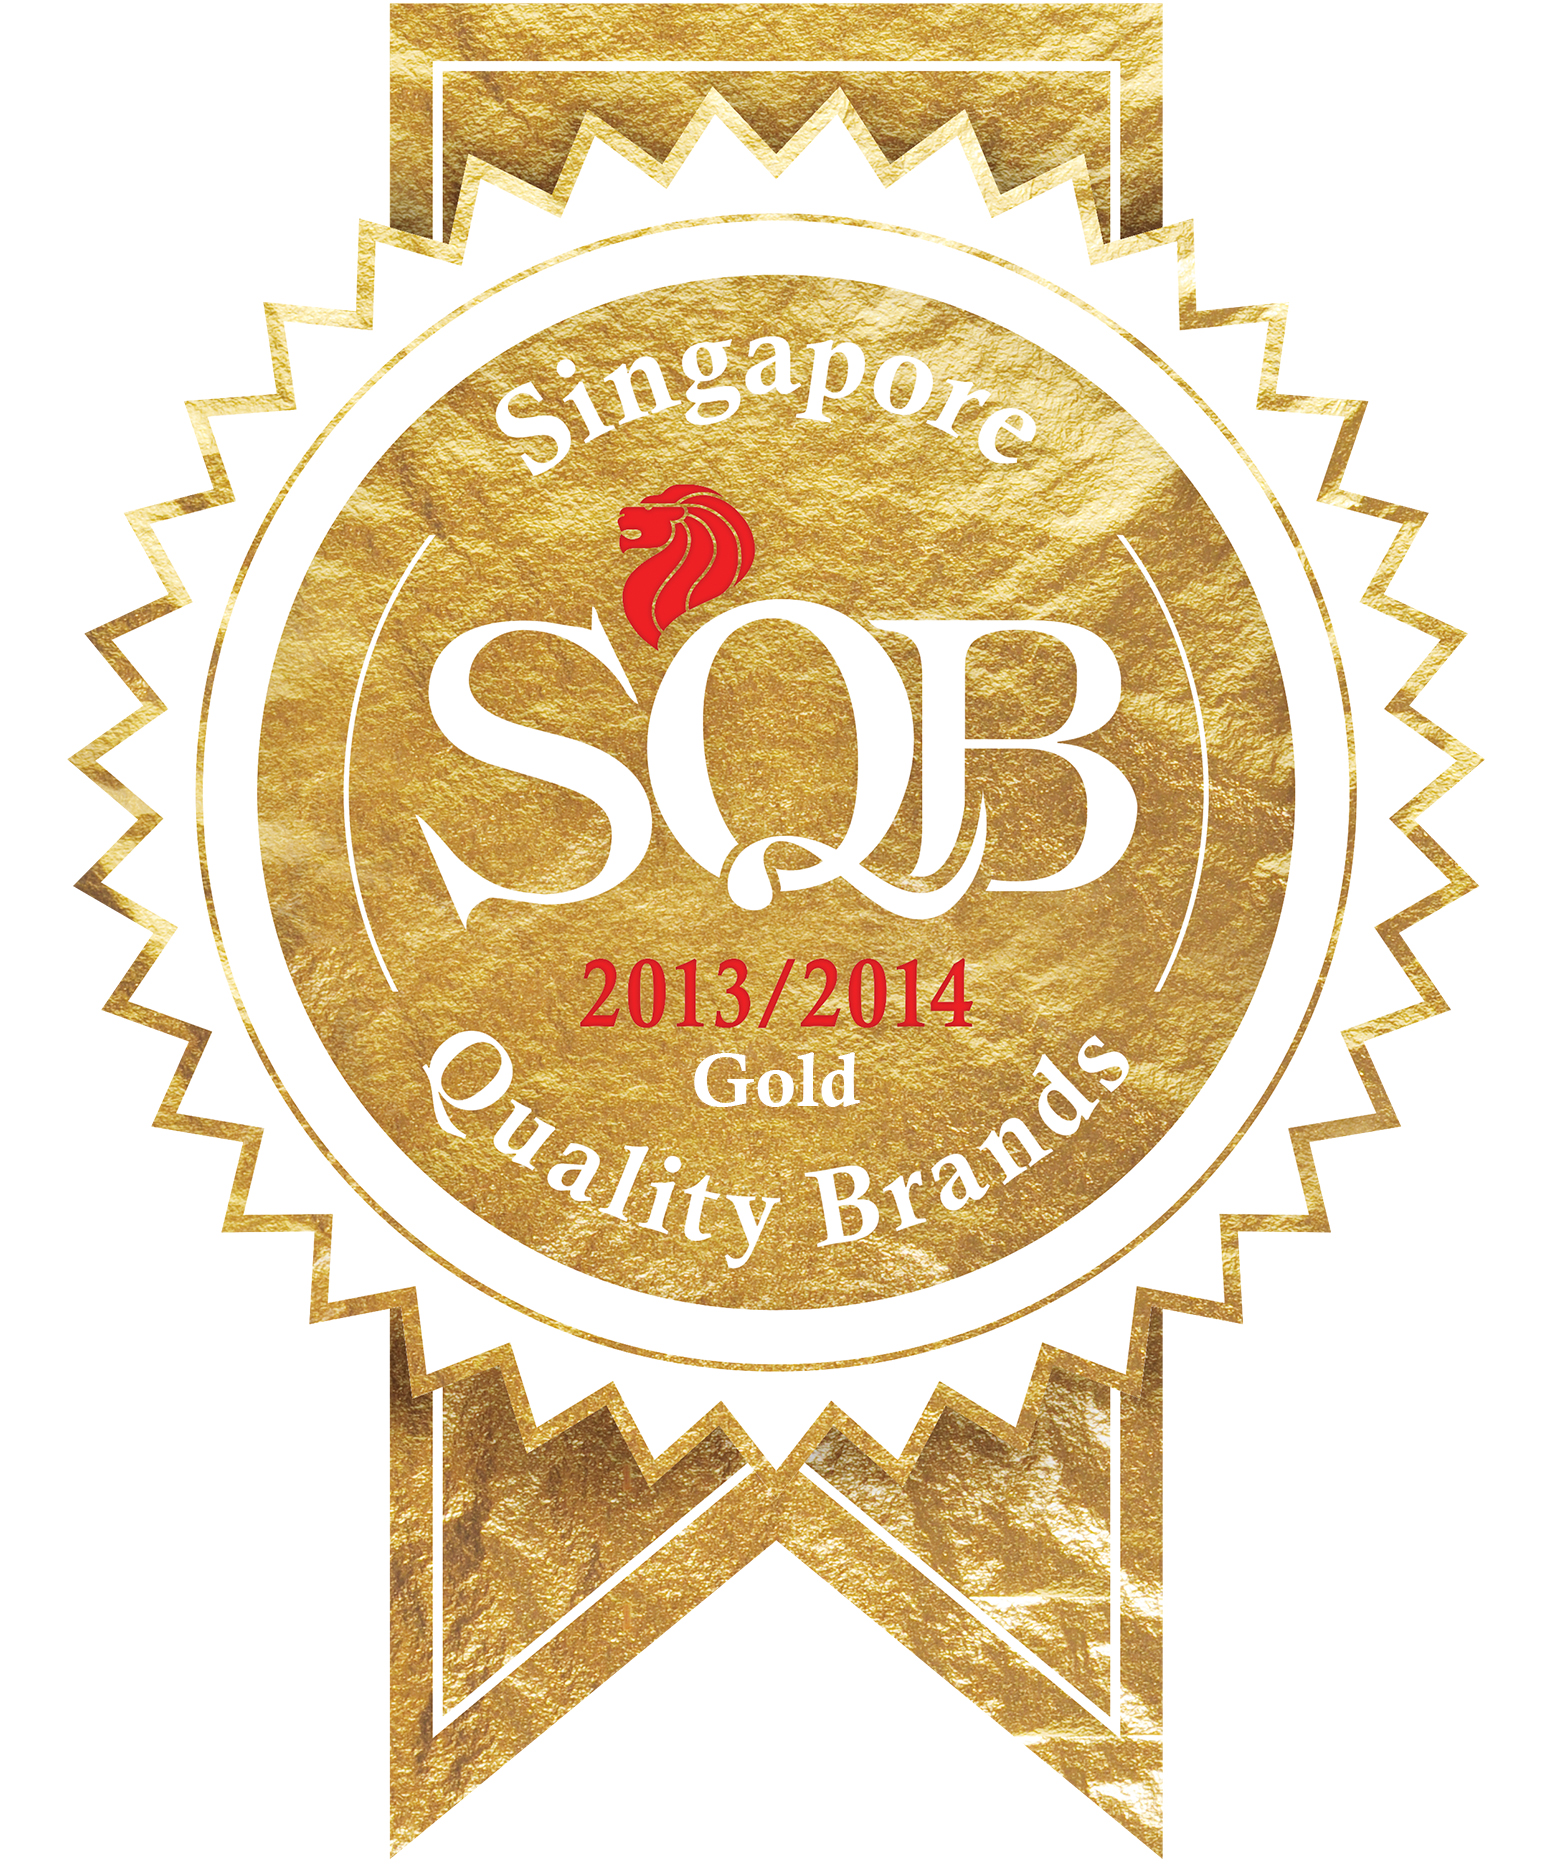 Singapore Quality Brands 2013/2014 – Gold Category